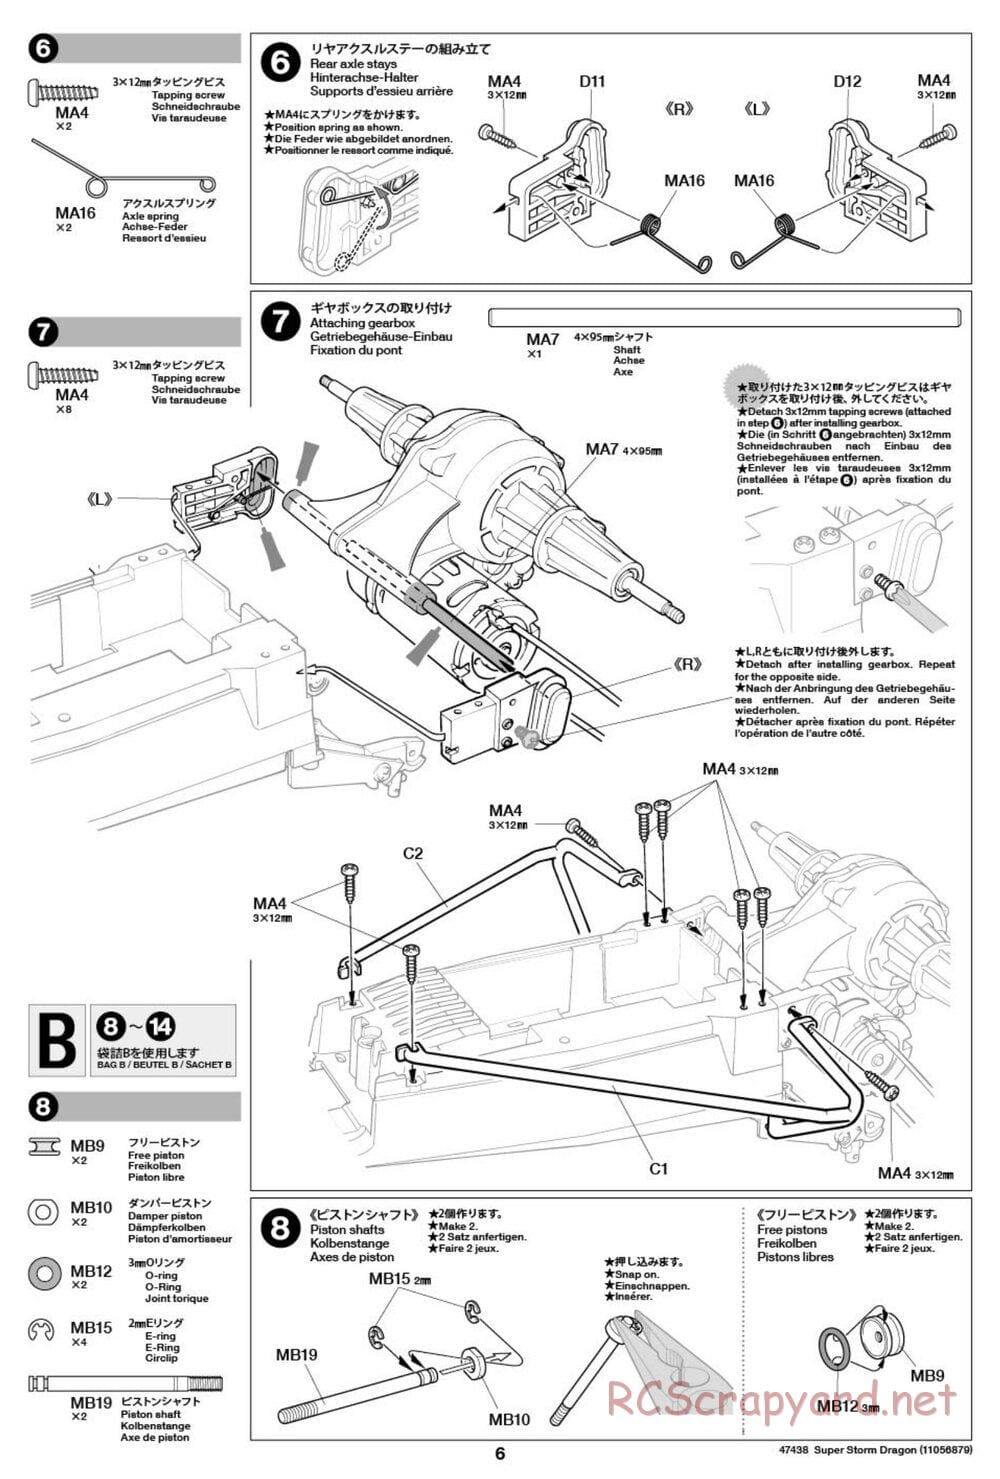 Tamiya - Super Storm Dragon Chassis - Manual - Page 6